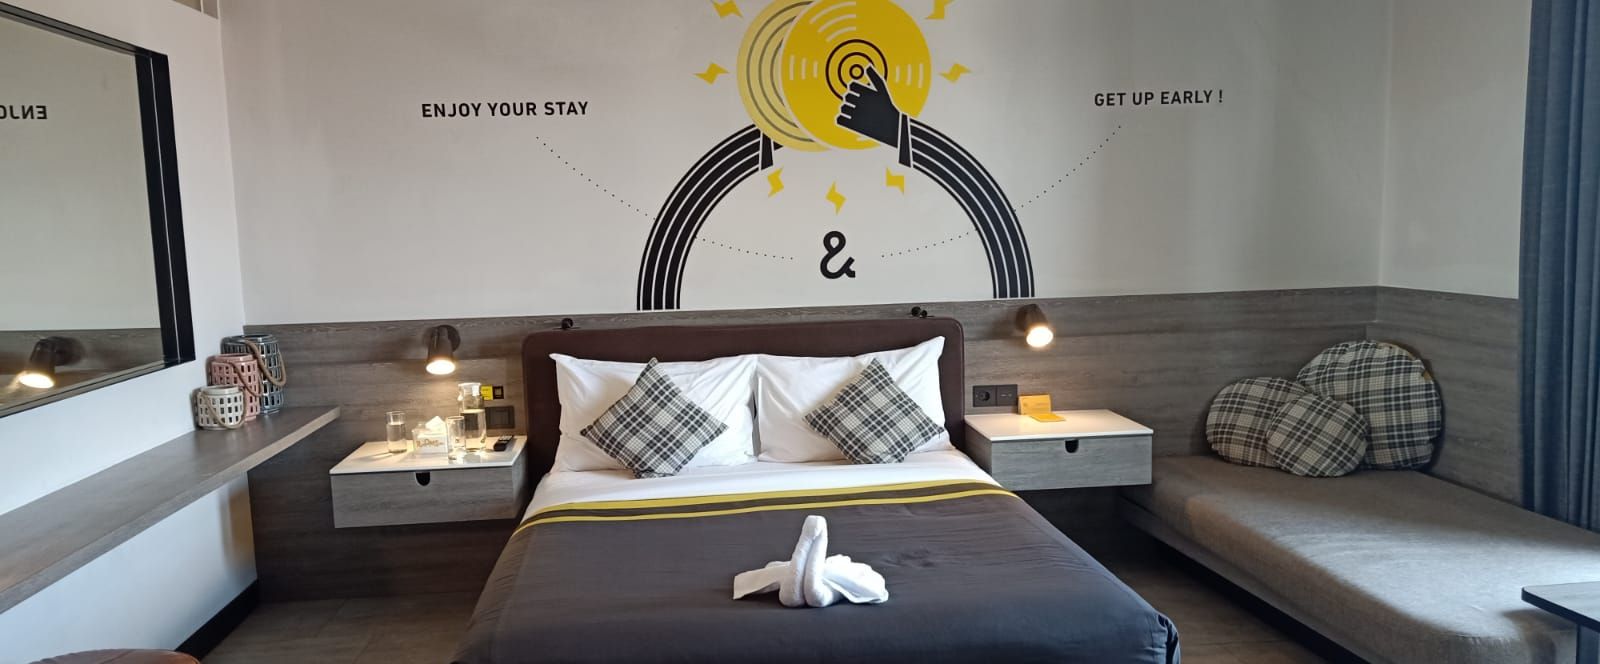 Rekomendasi Hotel Terbaik untuk Staycation di Semarang